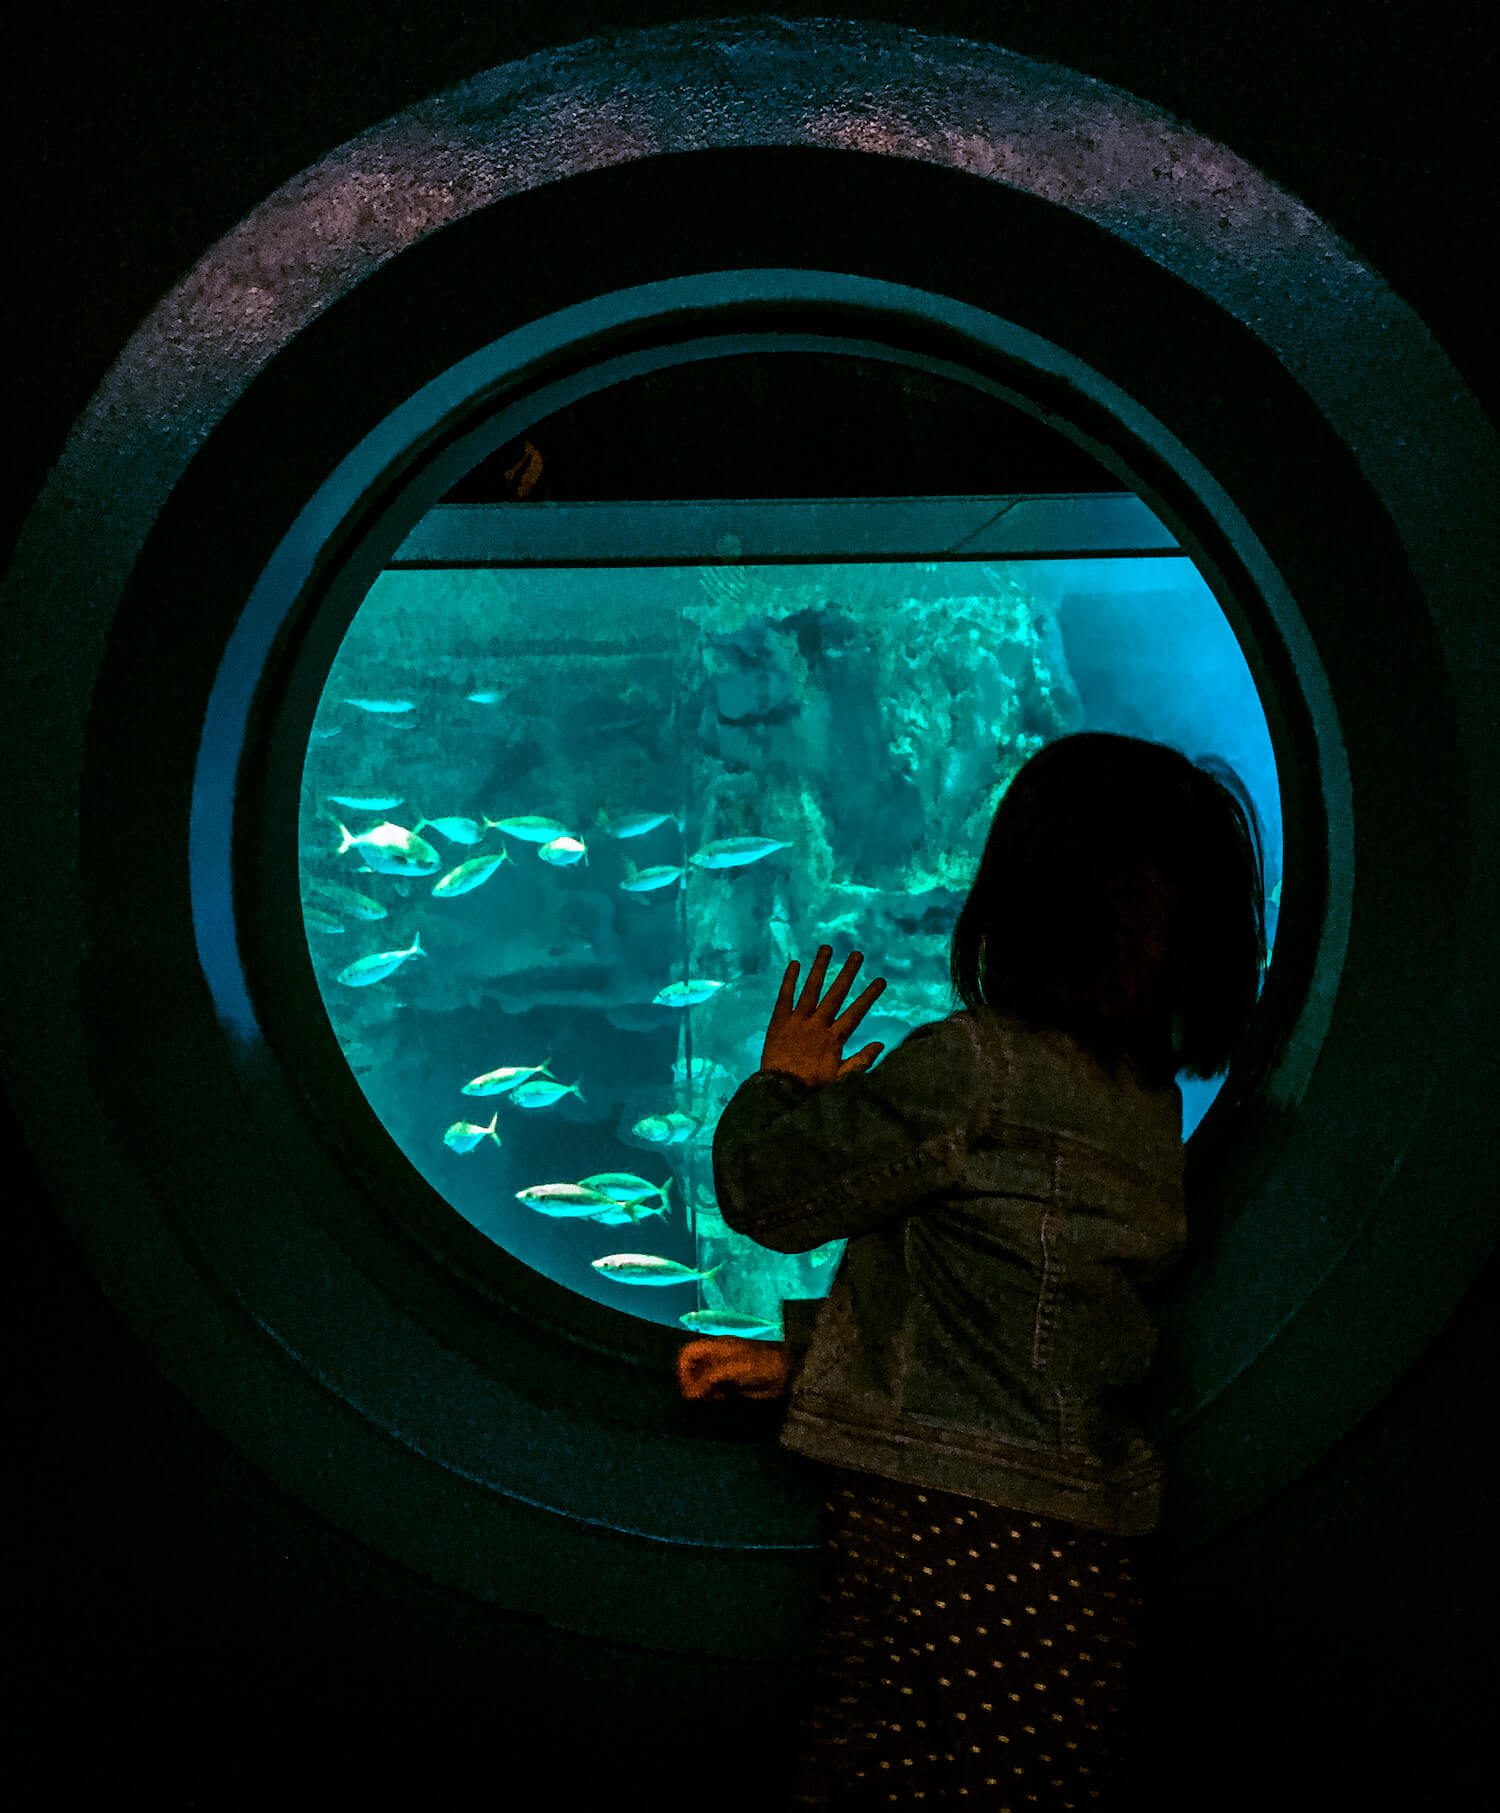 lotte world aquarium in jamsil, seoul